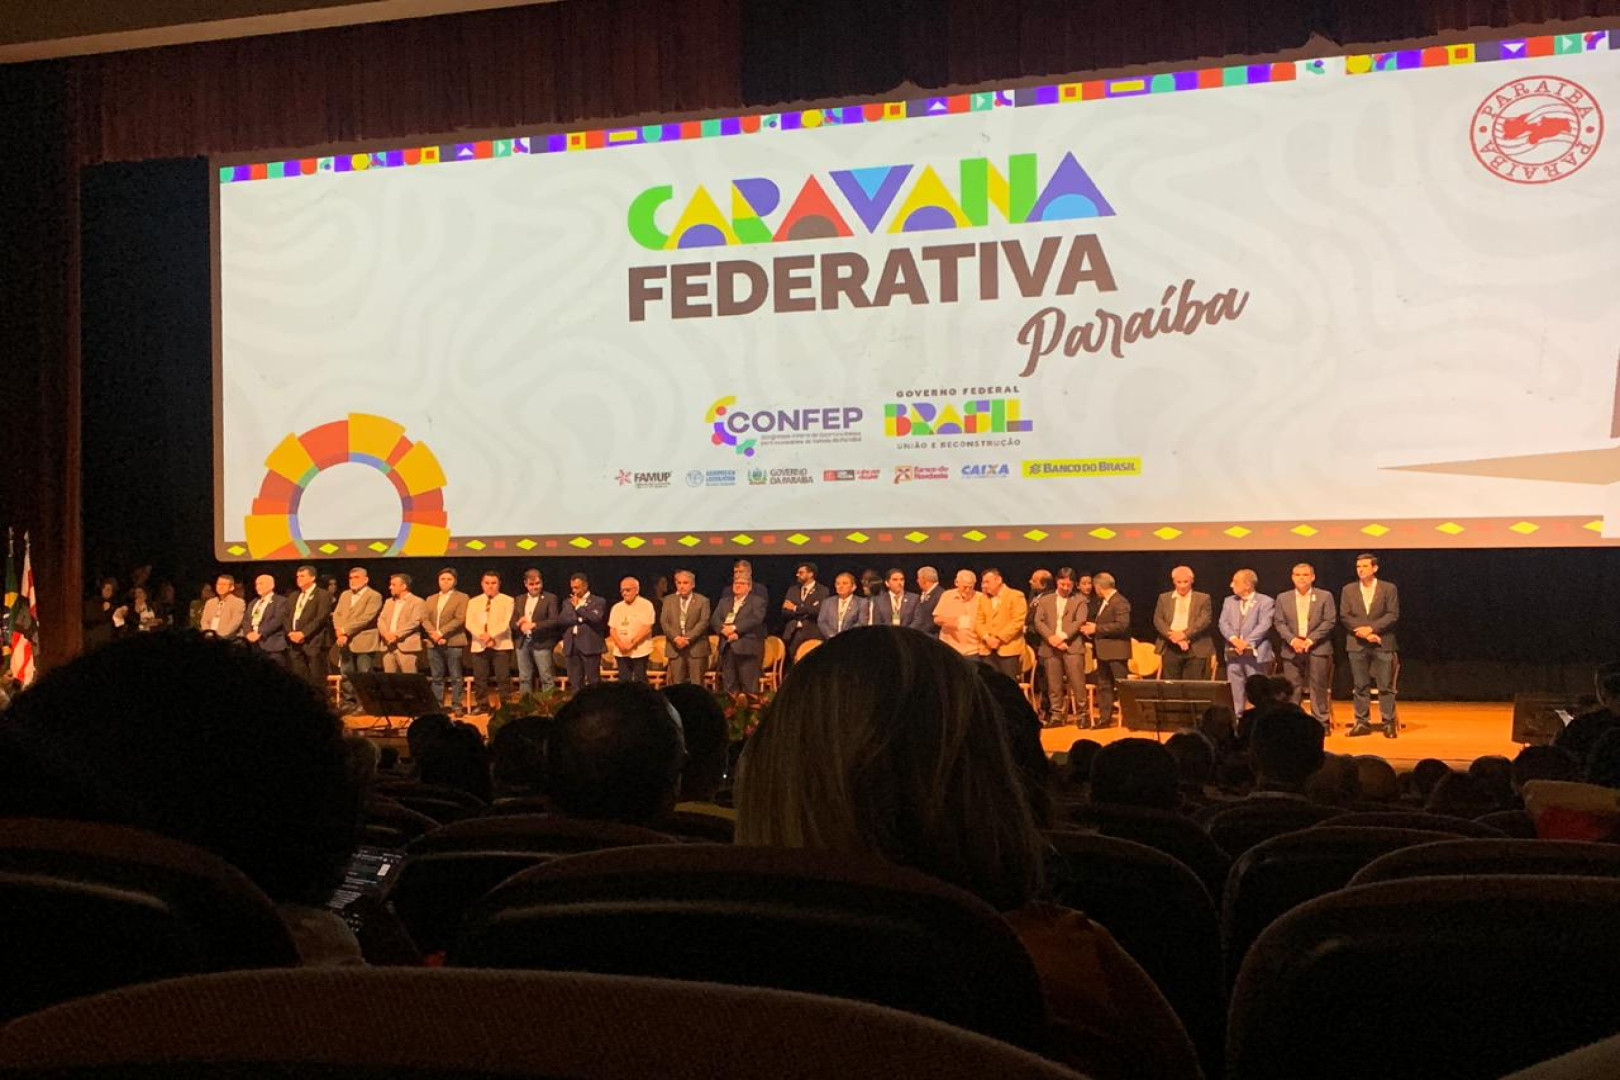 Agentes de Desenvolvimento Participam do Primeiro Dia do Congresso e Feira de Oportunidades na Paraíba: Uma Jornada de Enriquecimento e Conhecimento